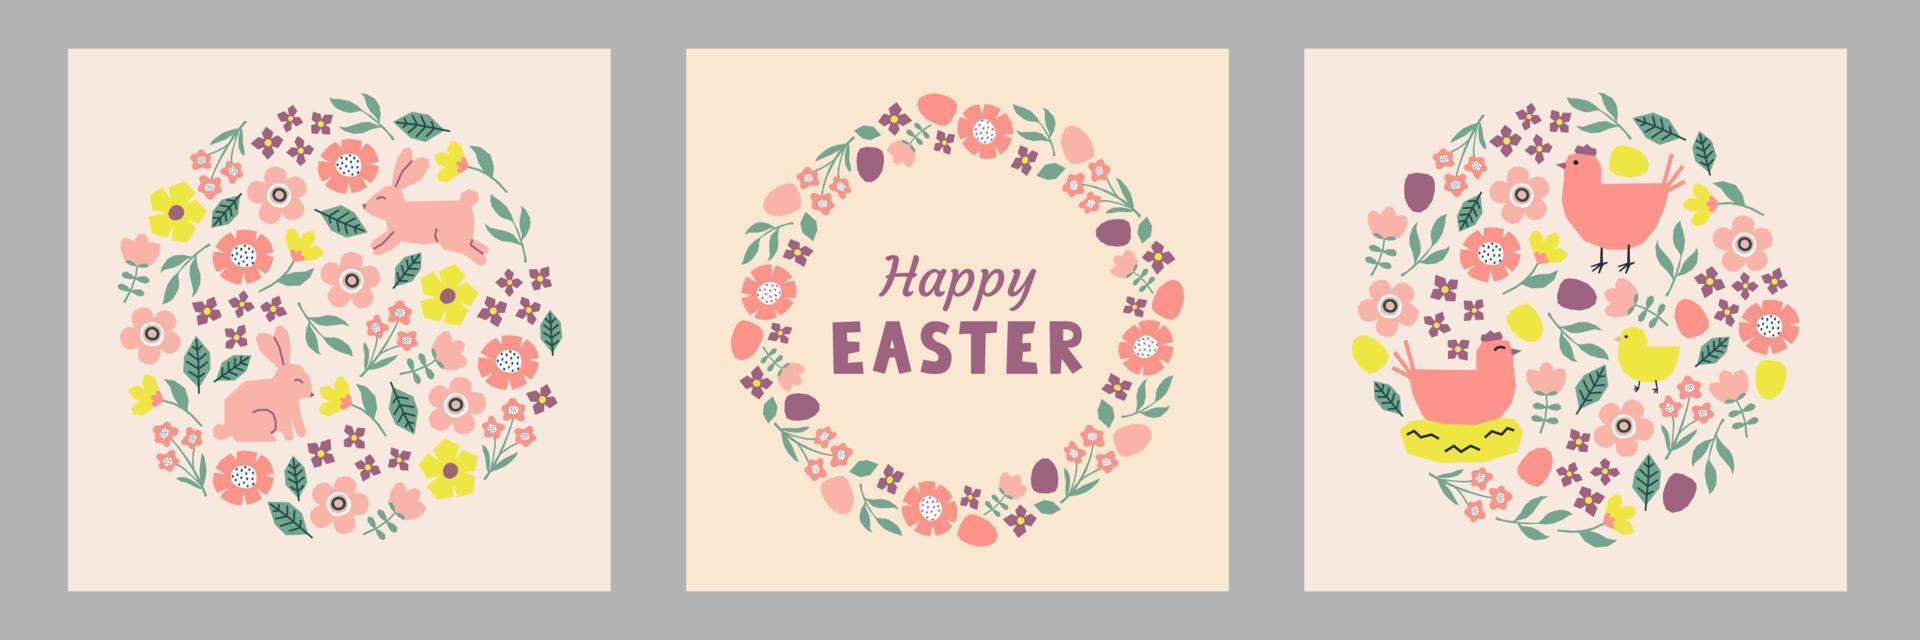 conjunto de Pascua de Resurrección tarjetas separar vistoso elementos. conejos, pollos, gallinas, flores y hojas vector